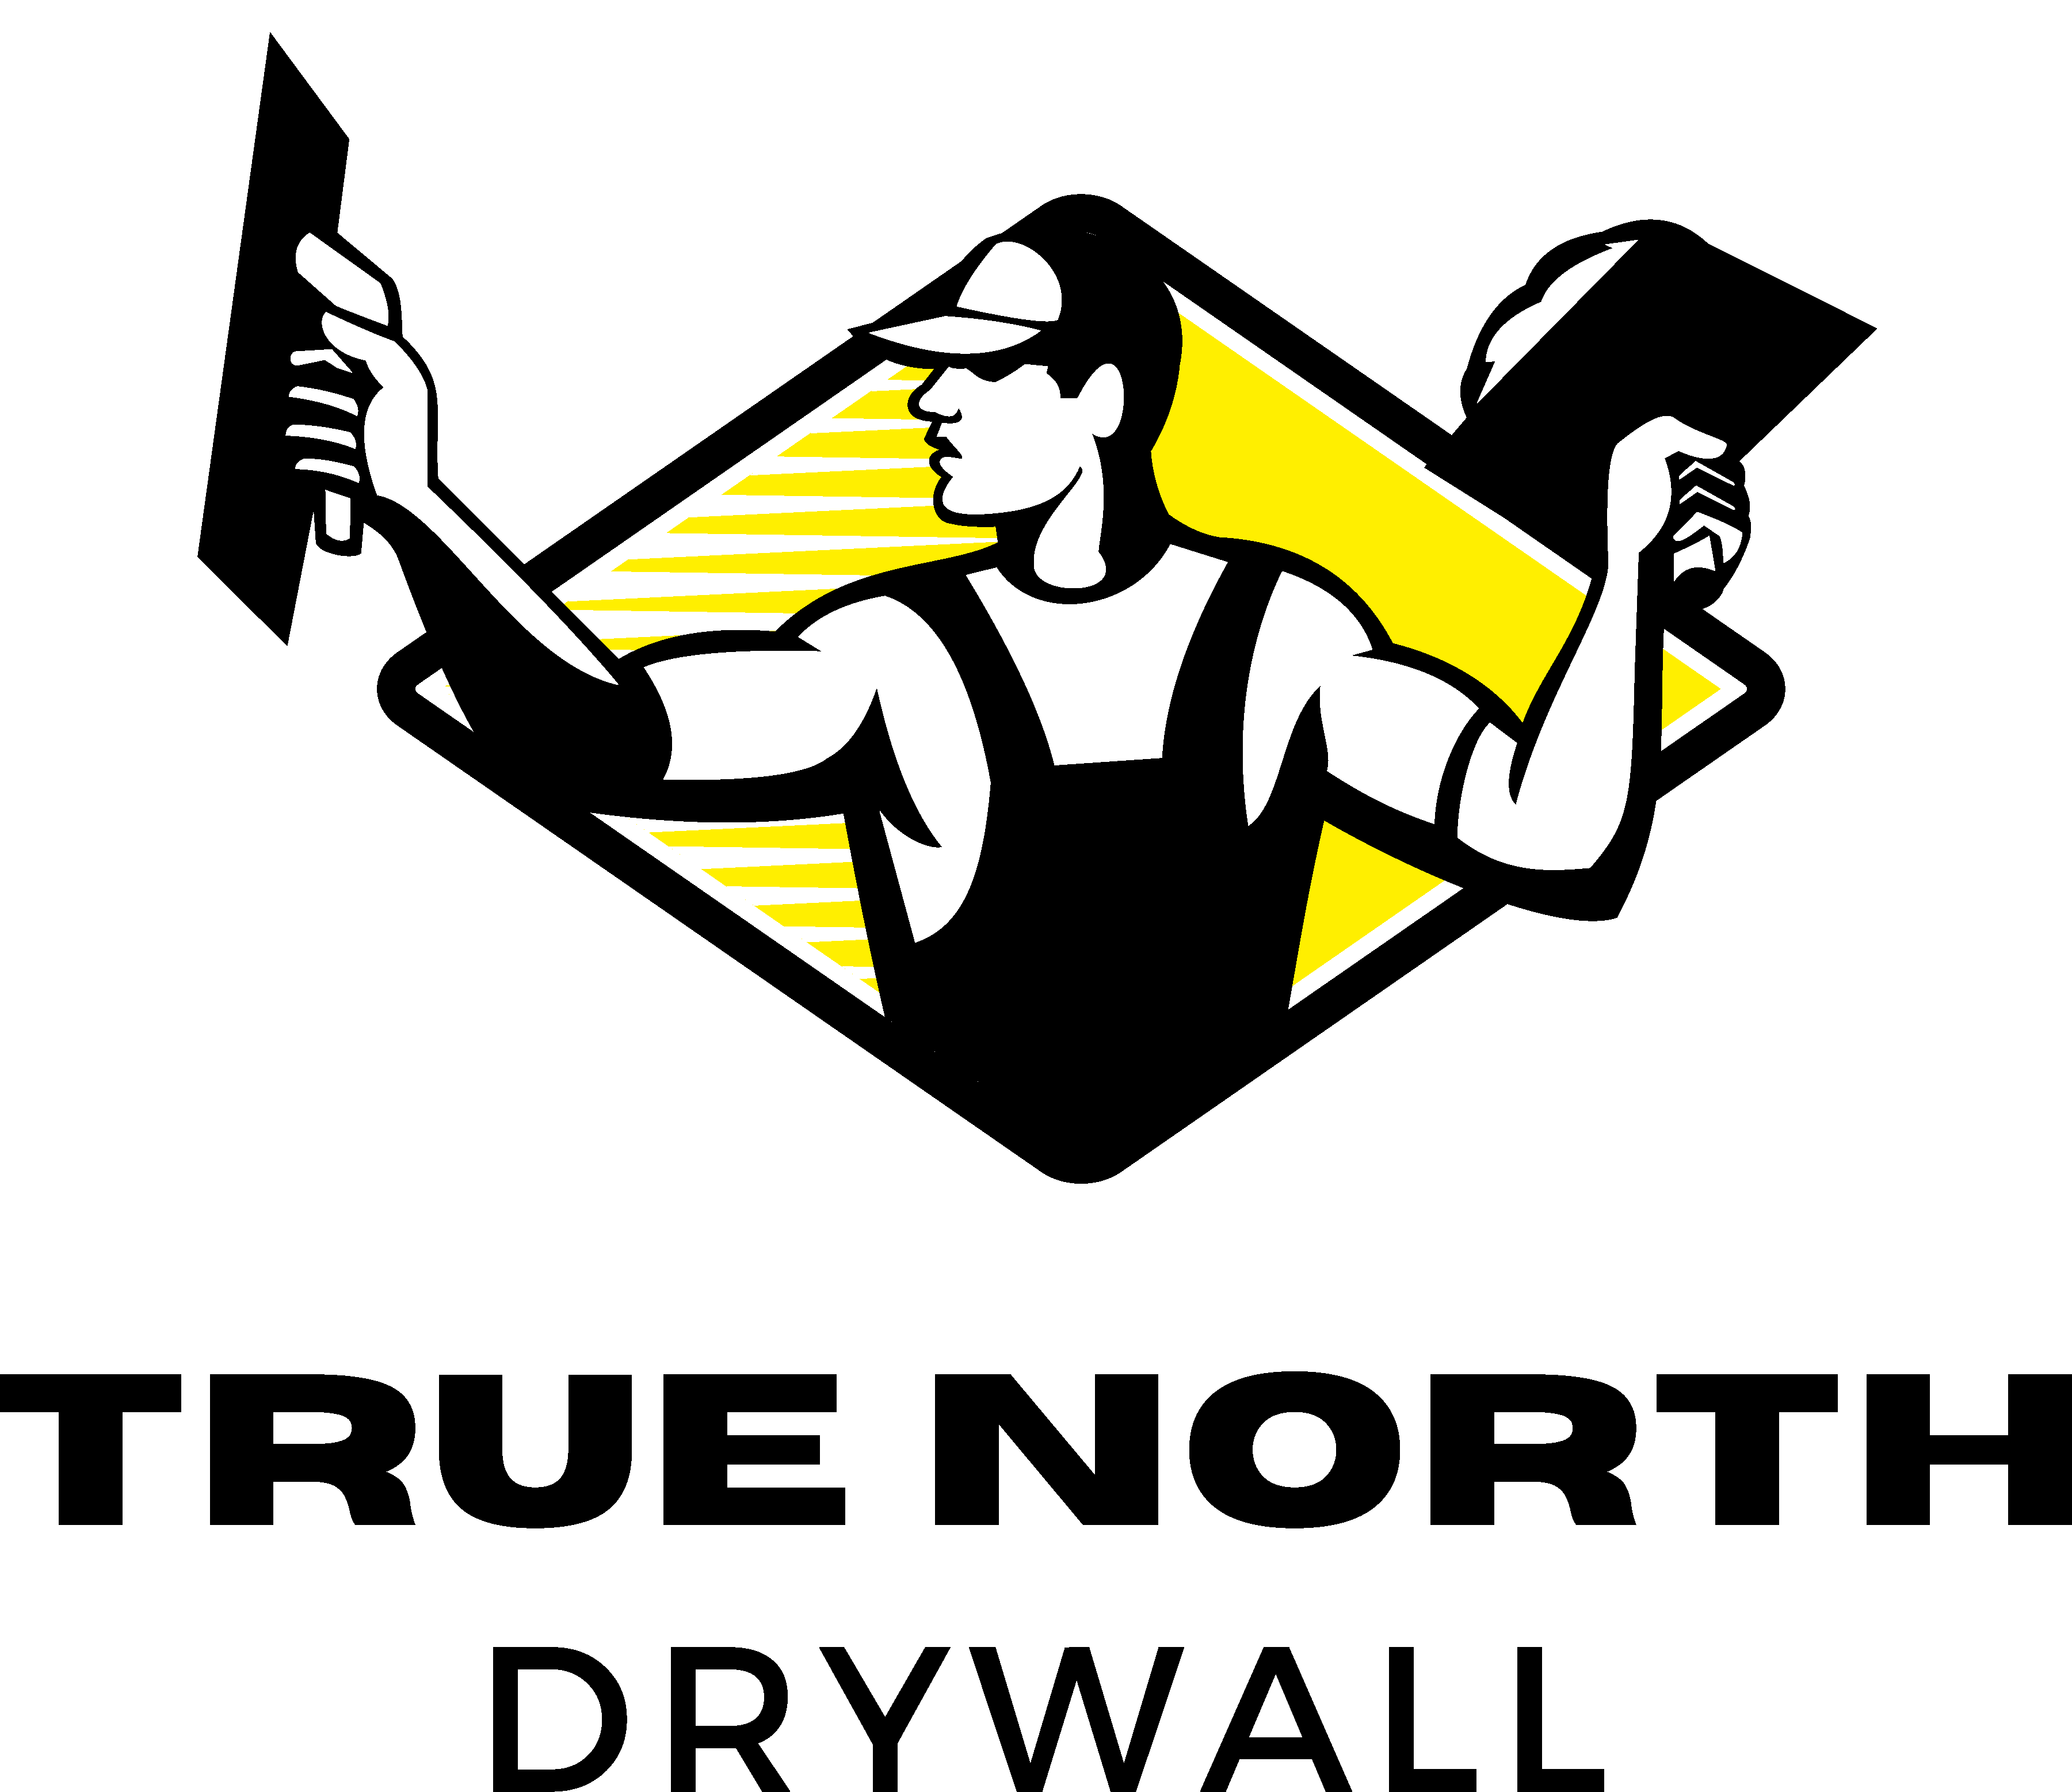 True North Drywall's logo